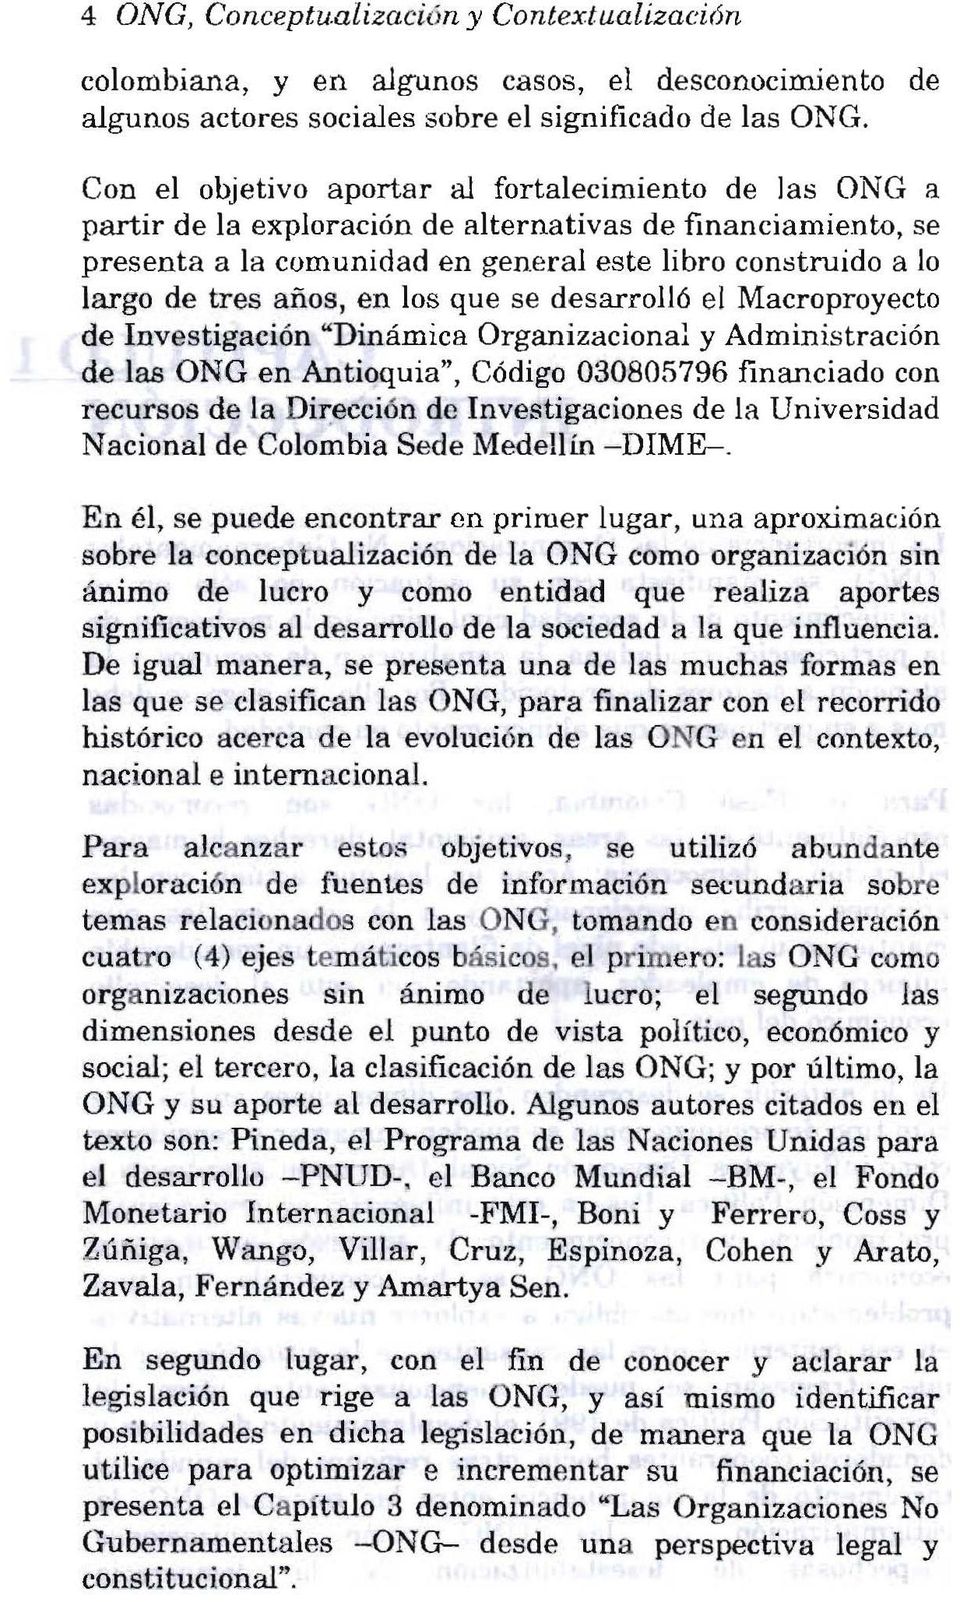 años, en los que se desarrolló el Macroproyecto de Investigación "Dinámica Organizacional y Administración de las ONG en Antioquia", Código 030805796 financiado con recursos de la Dirección de